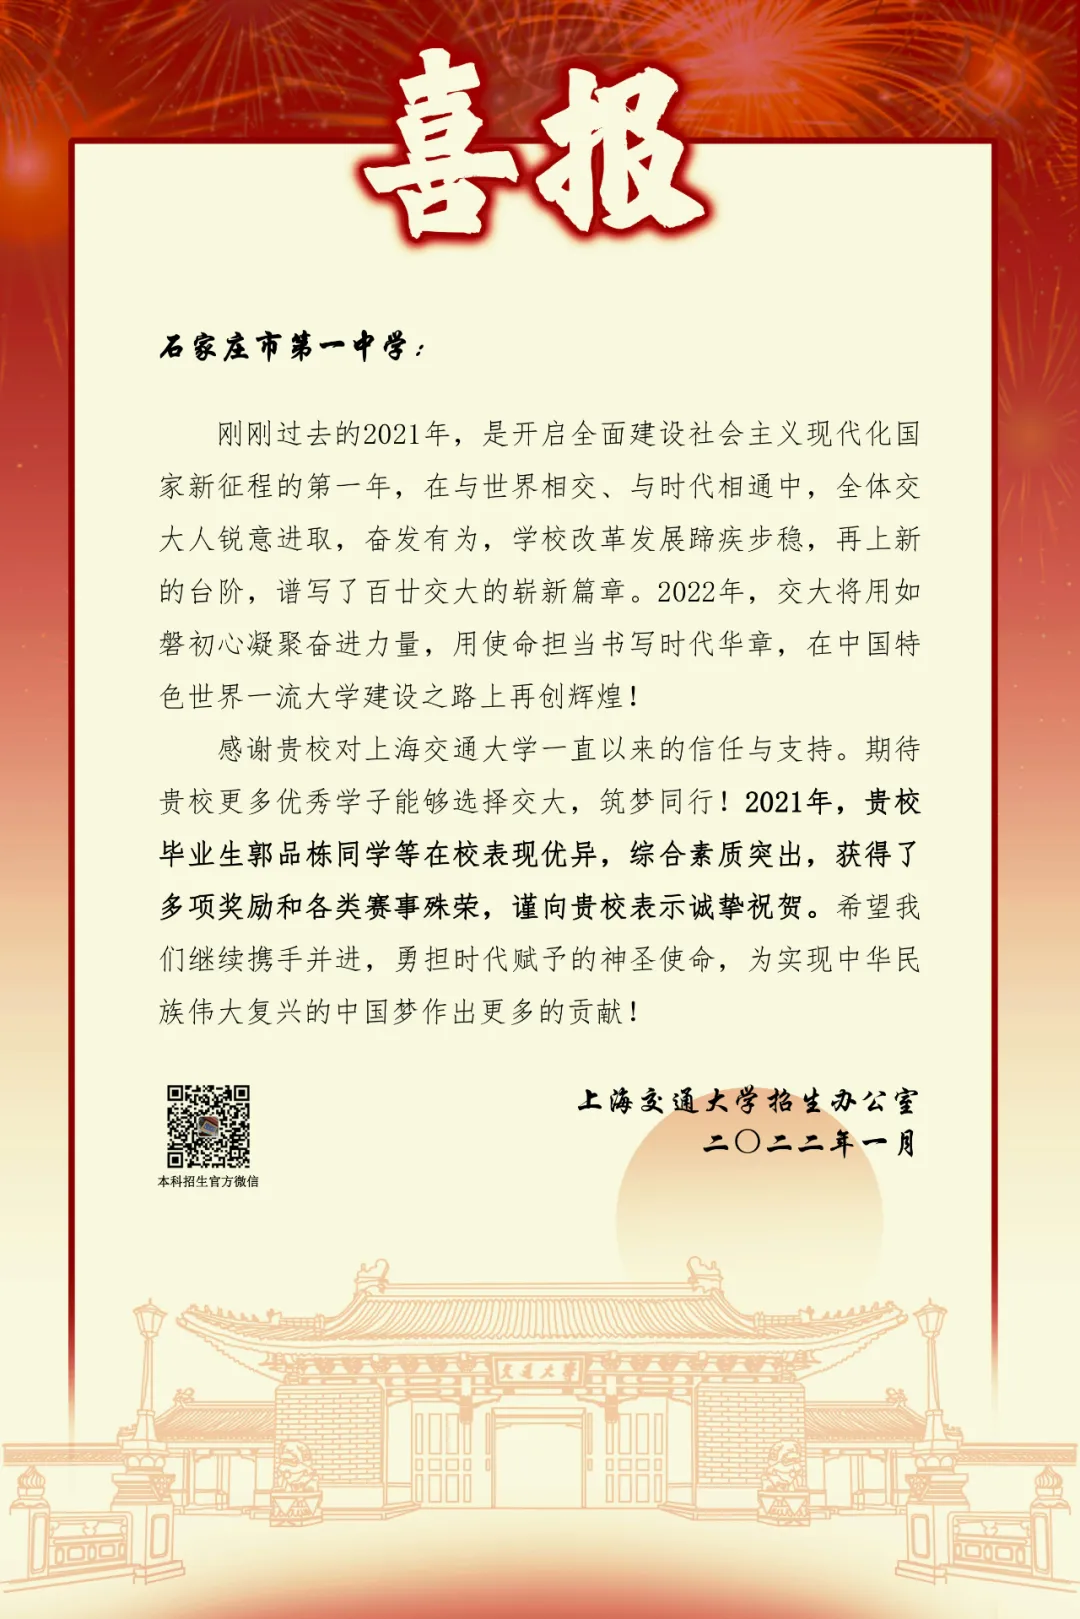 【喜报】上海交通大学向金沙唯一官方娱乐场-登录入口发来喜报